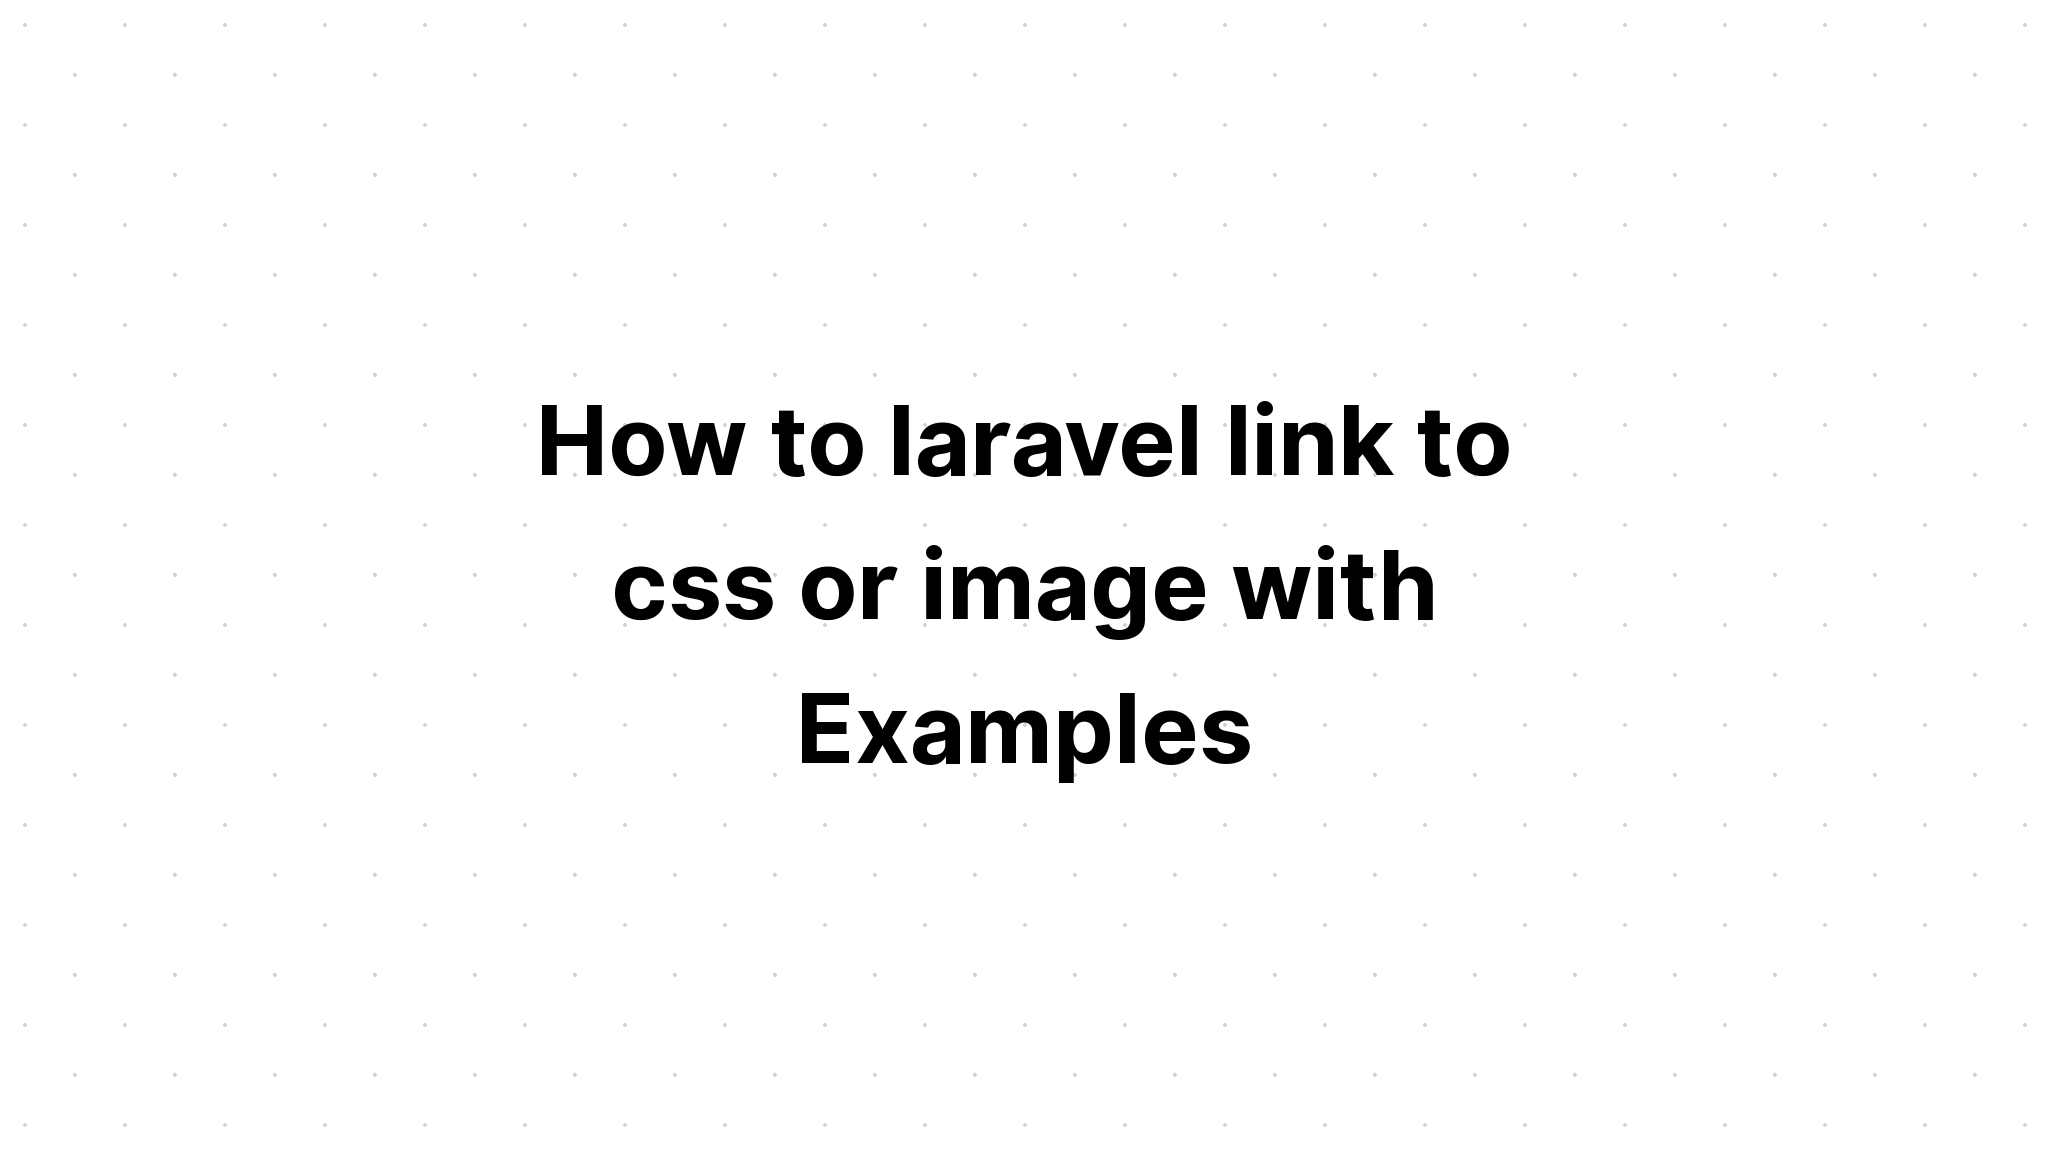 Cara link laravel ke css atau gambar dengan Contoh